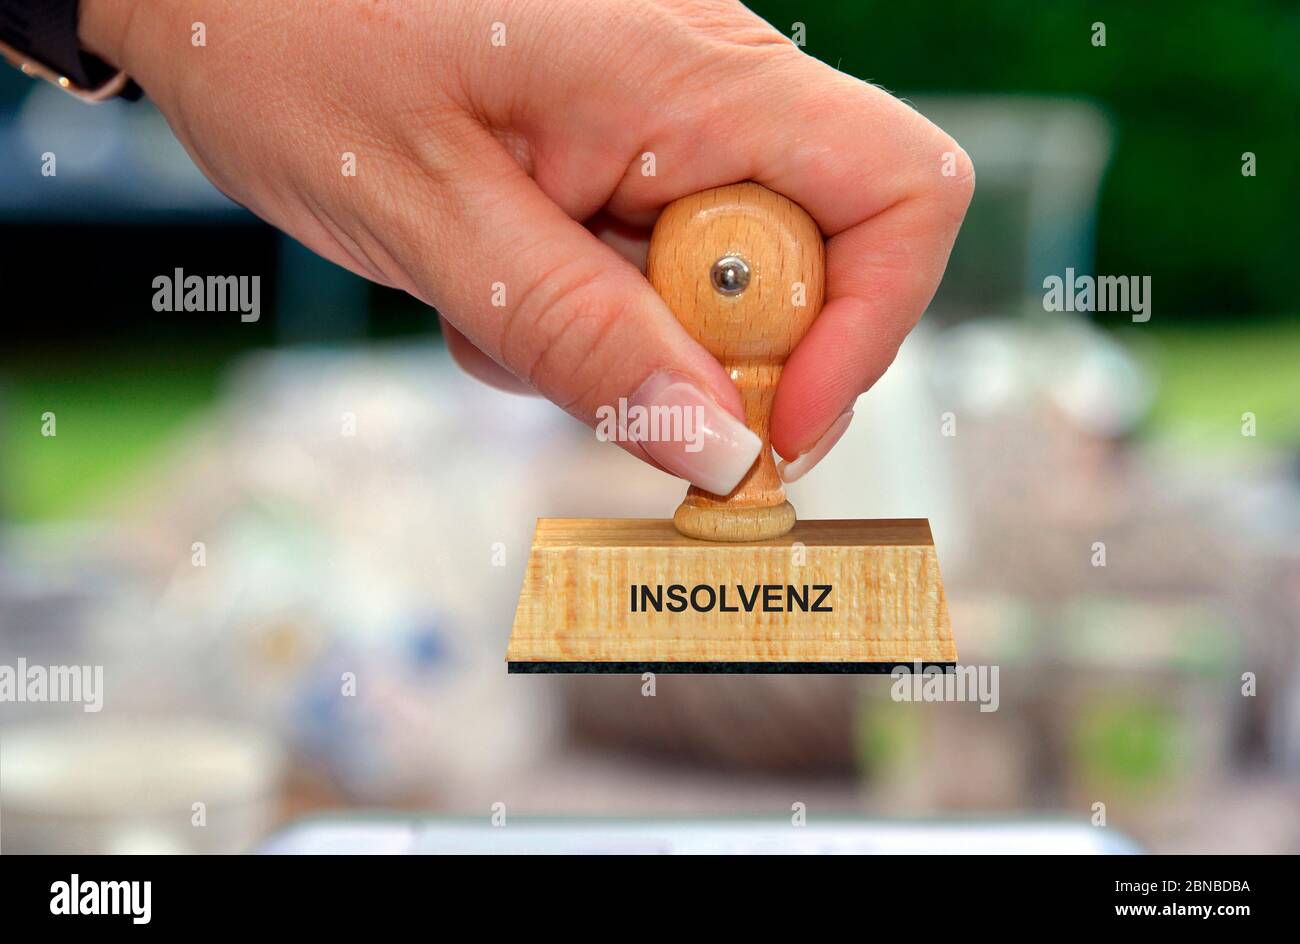 Timbre dans la main d'une femme lettrage Indolvenz, insolvabilité, Allemagne Banque D'Images